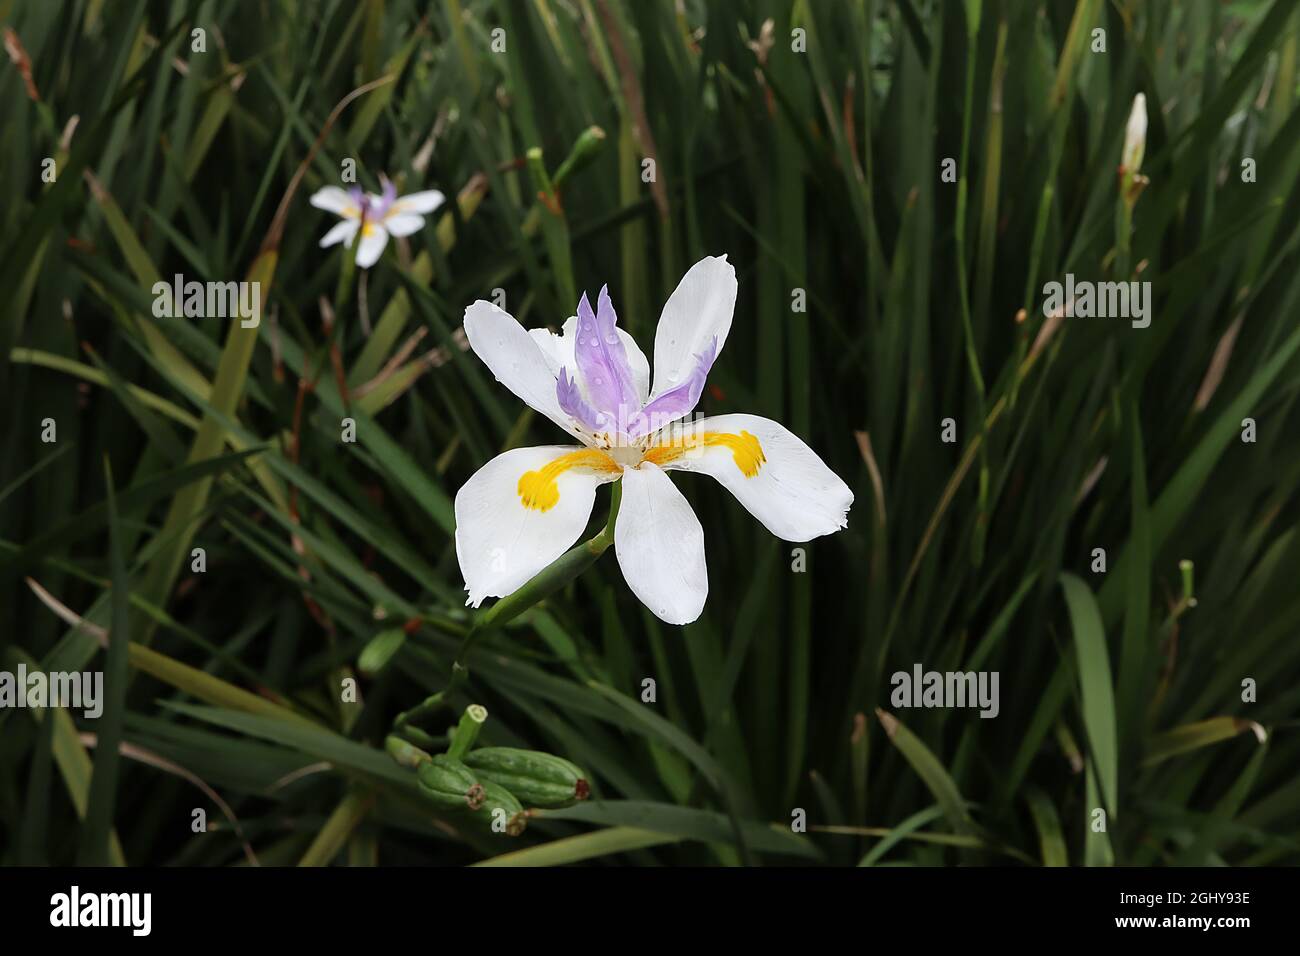 Dietes grandiflora “Reen Lelie” iride fata – cadute bianche con segni gialli e standard violacei corti, agosto, Inghilterra, Regno Unito Foto Stock